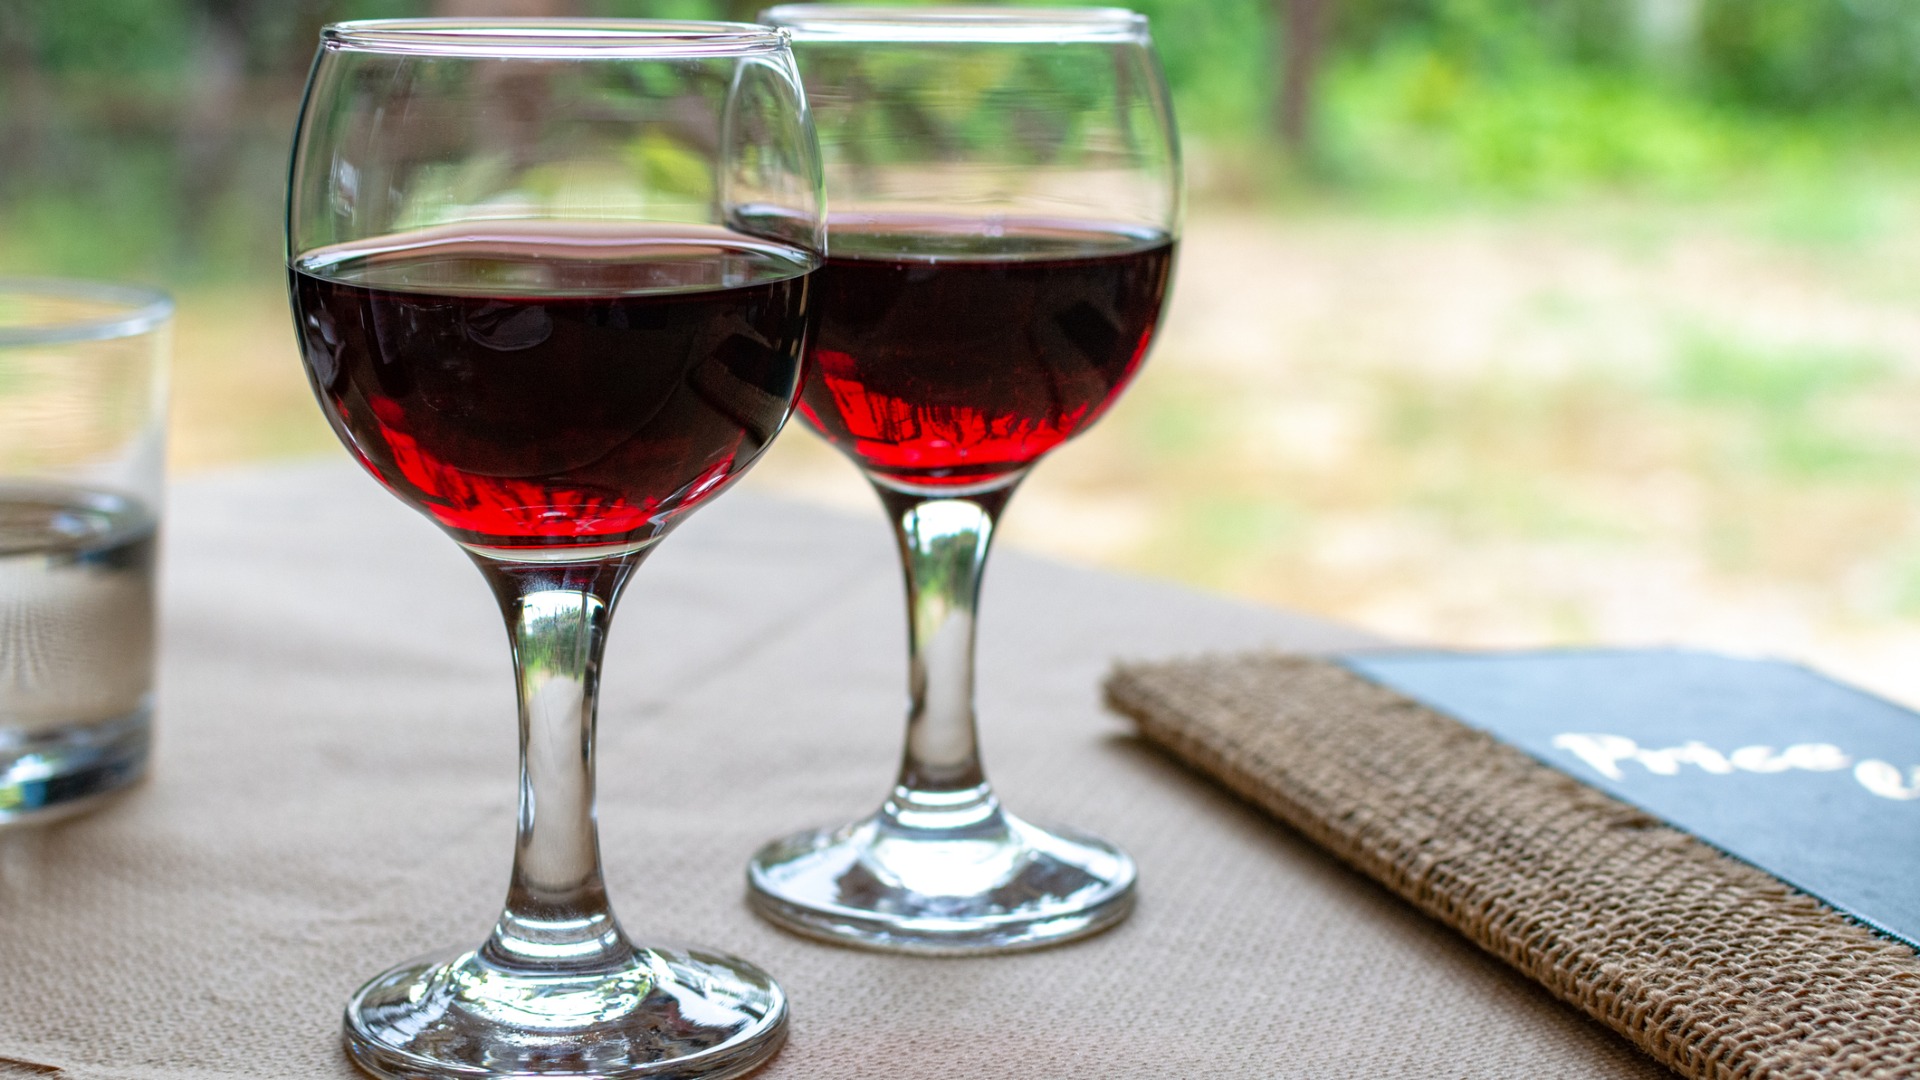 Acesta este un prim plan a două pahare umplute cu vin roșu Agiorgitiko.  Agiorgitiko este unul dintre cele mai bune vinuri grecești. 